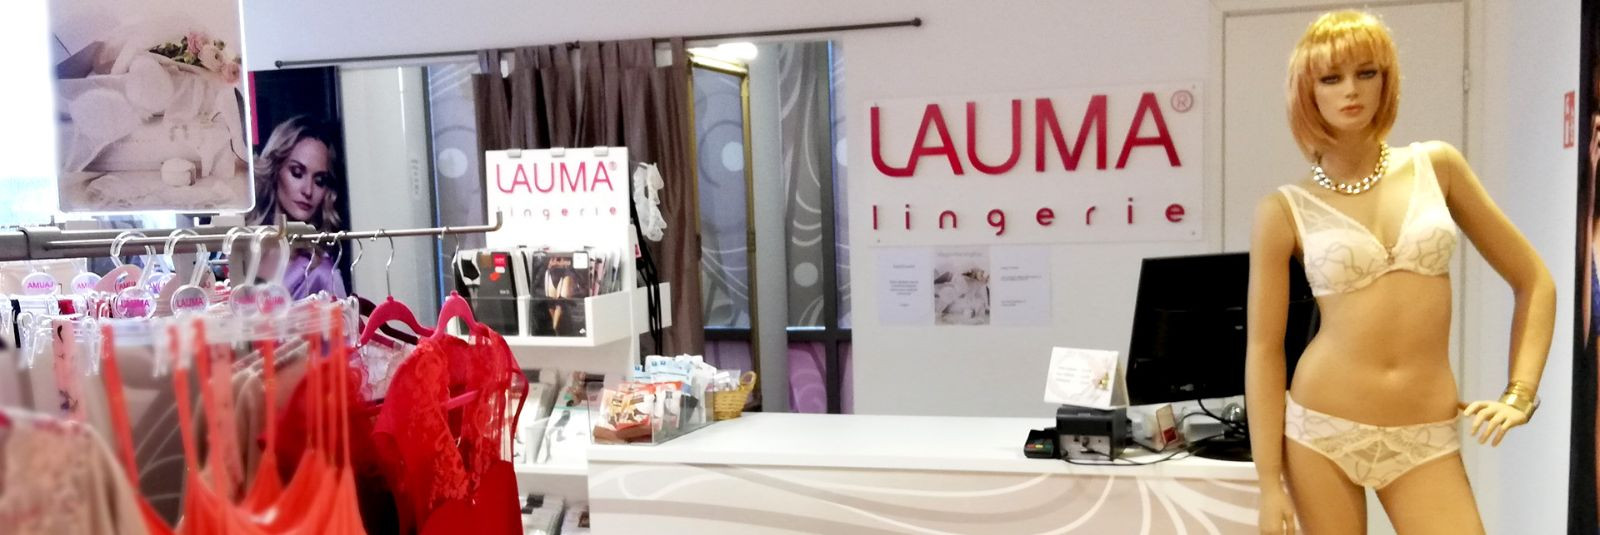 Rasmus Business OÜ on Eesti üks juhtivaid tekstiilikaupade hulgi- ja jaekaubandusettevõtteid, mis on spetsialiseerunud kvaliteetse naistepesu ja aluspesu müügil